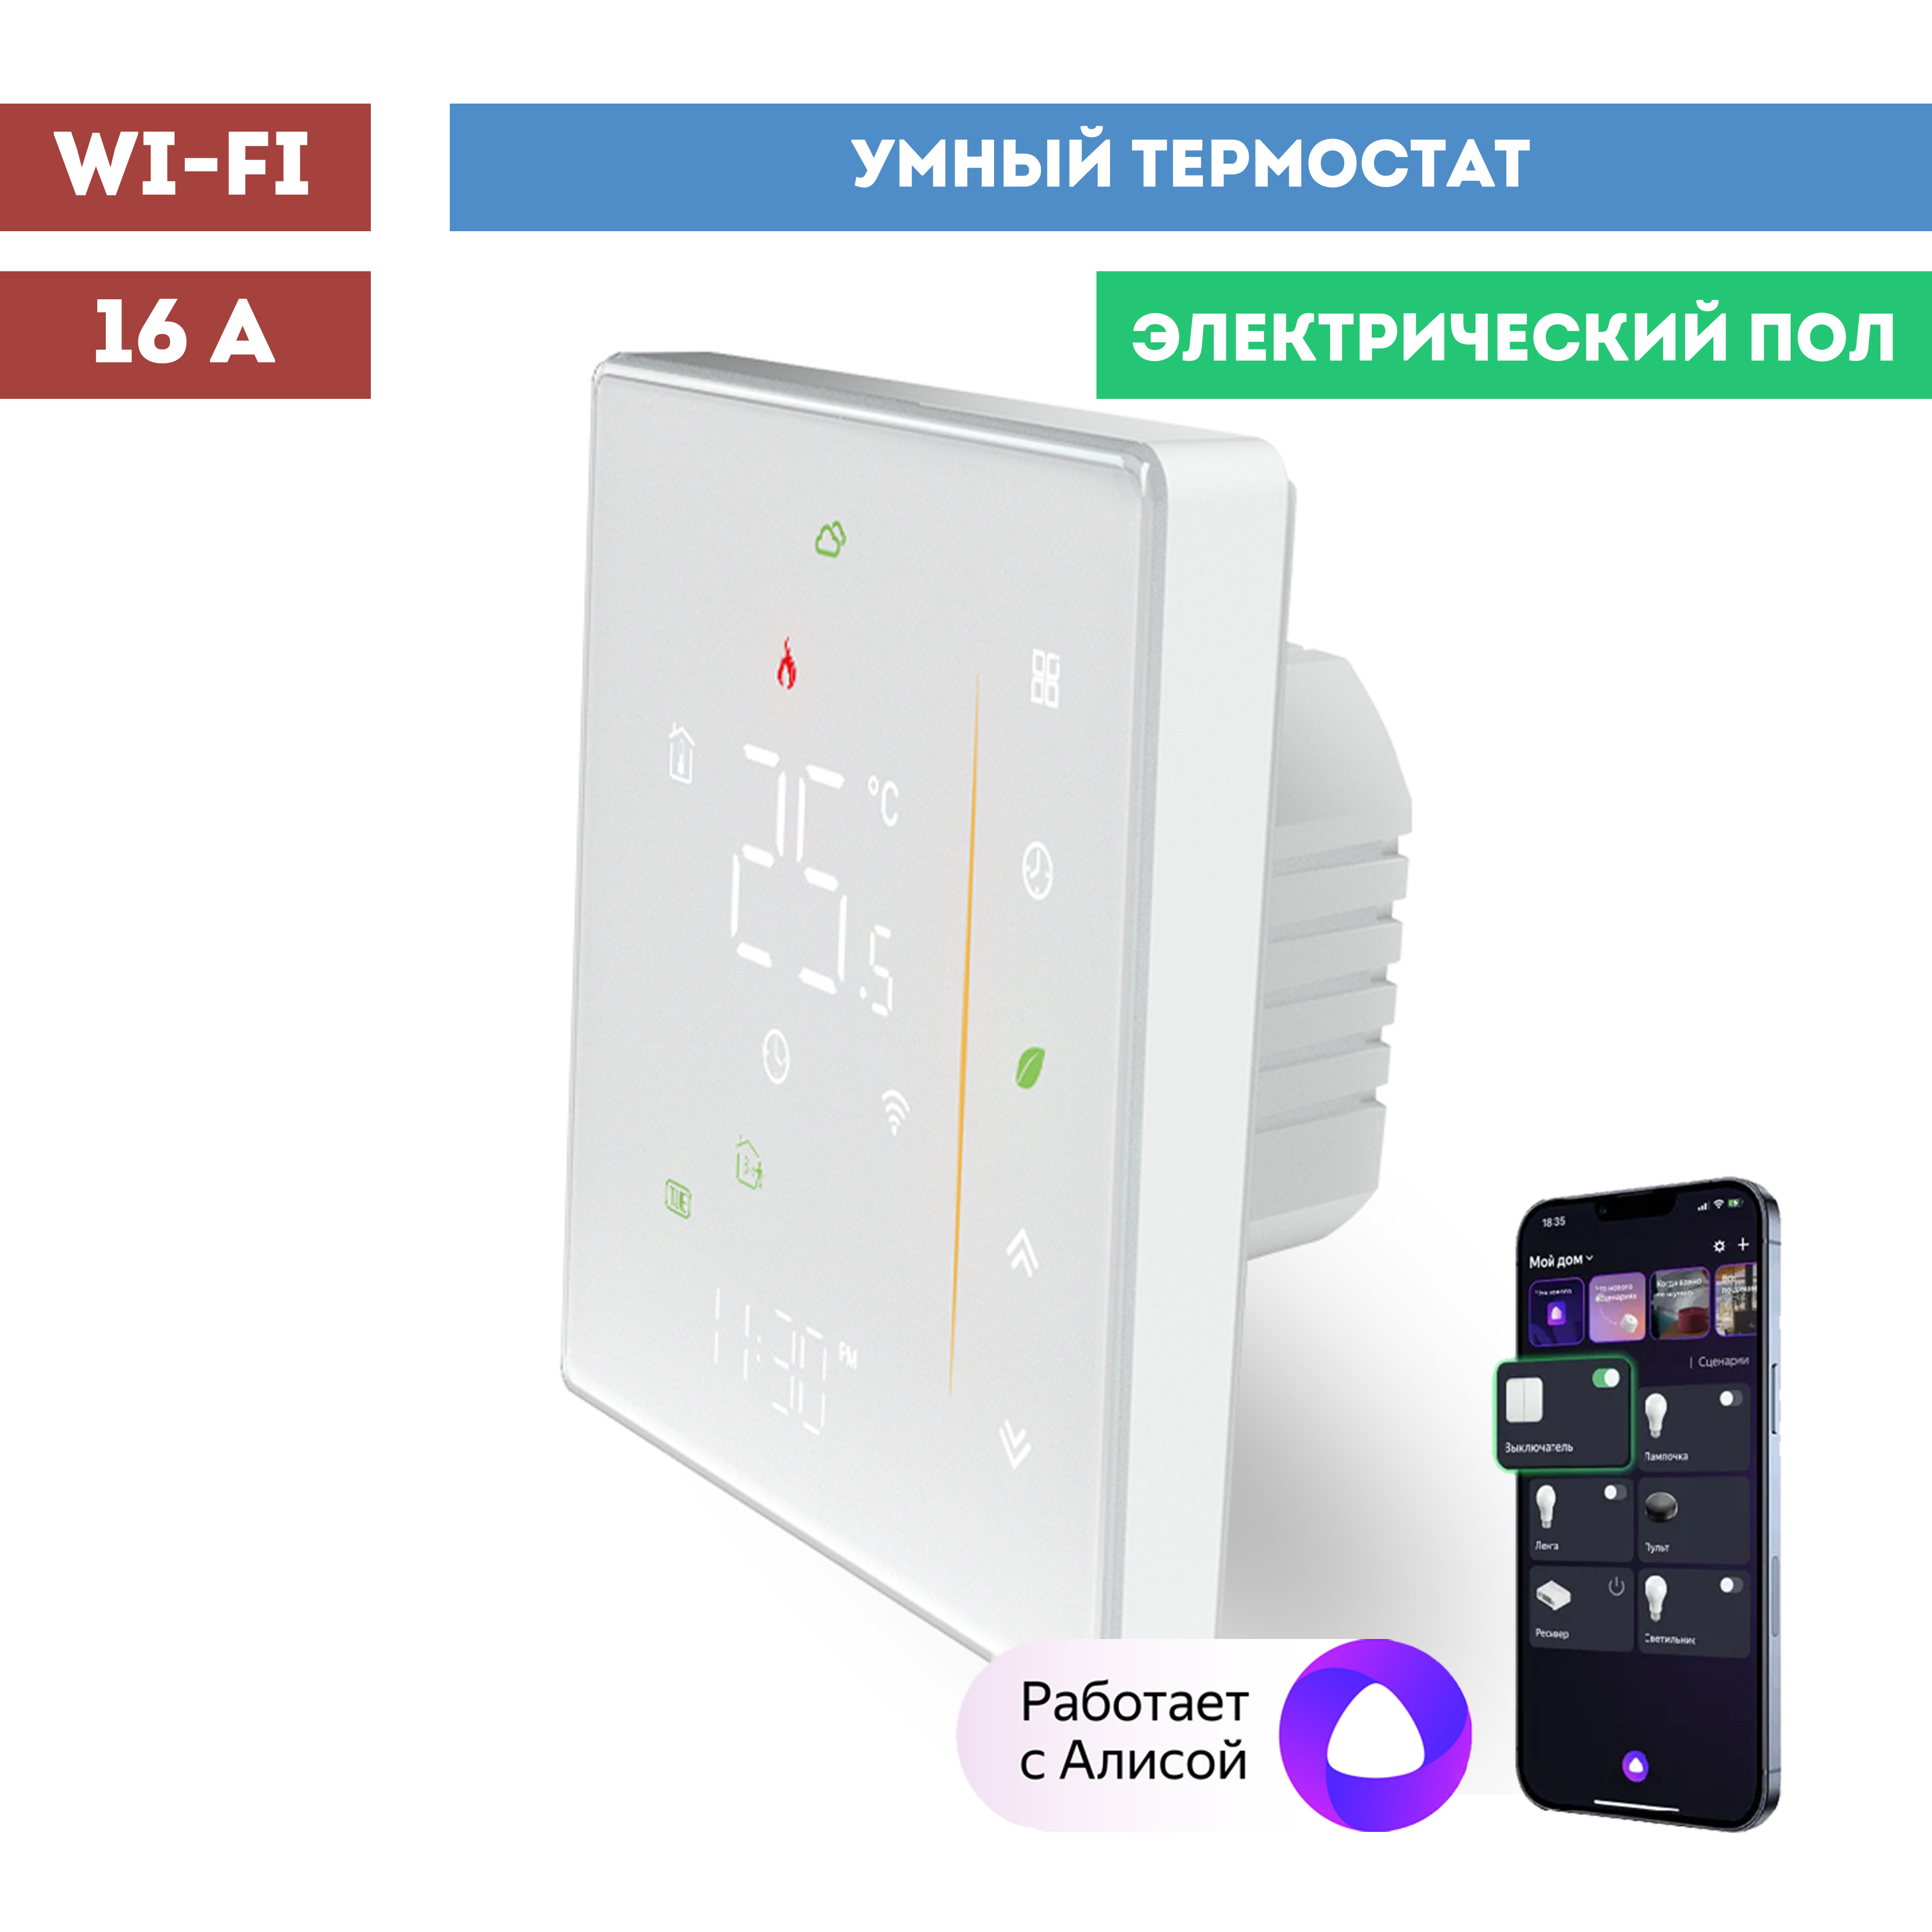 Умный Wi-Fi термостат (терморегулятор) с Алисой, diip, 10021 умный wi fi сенсорный терморегулятор securic